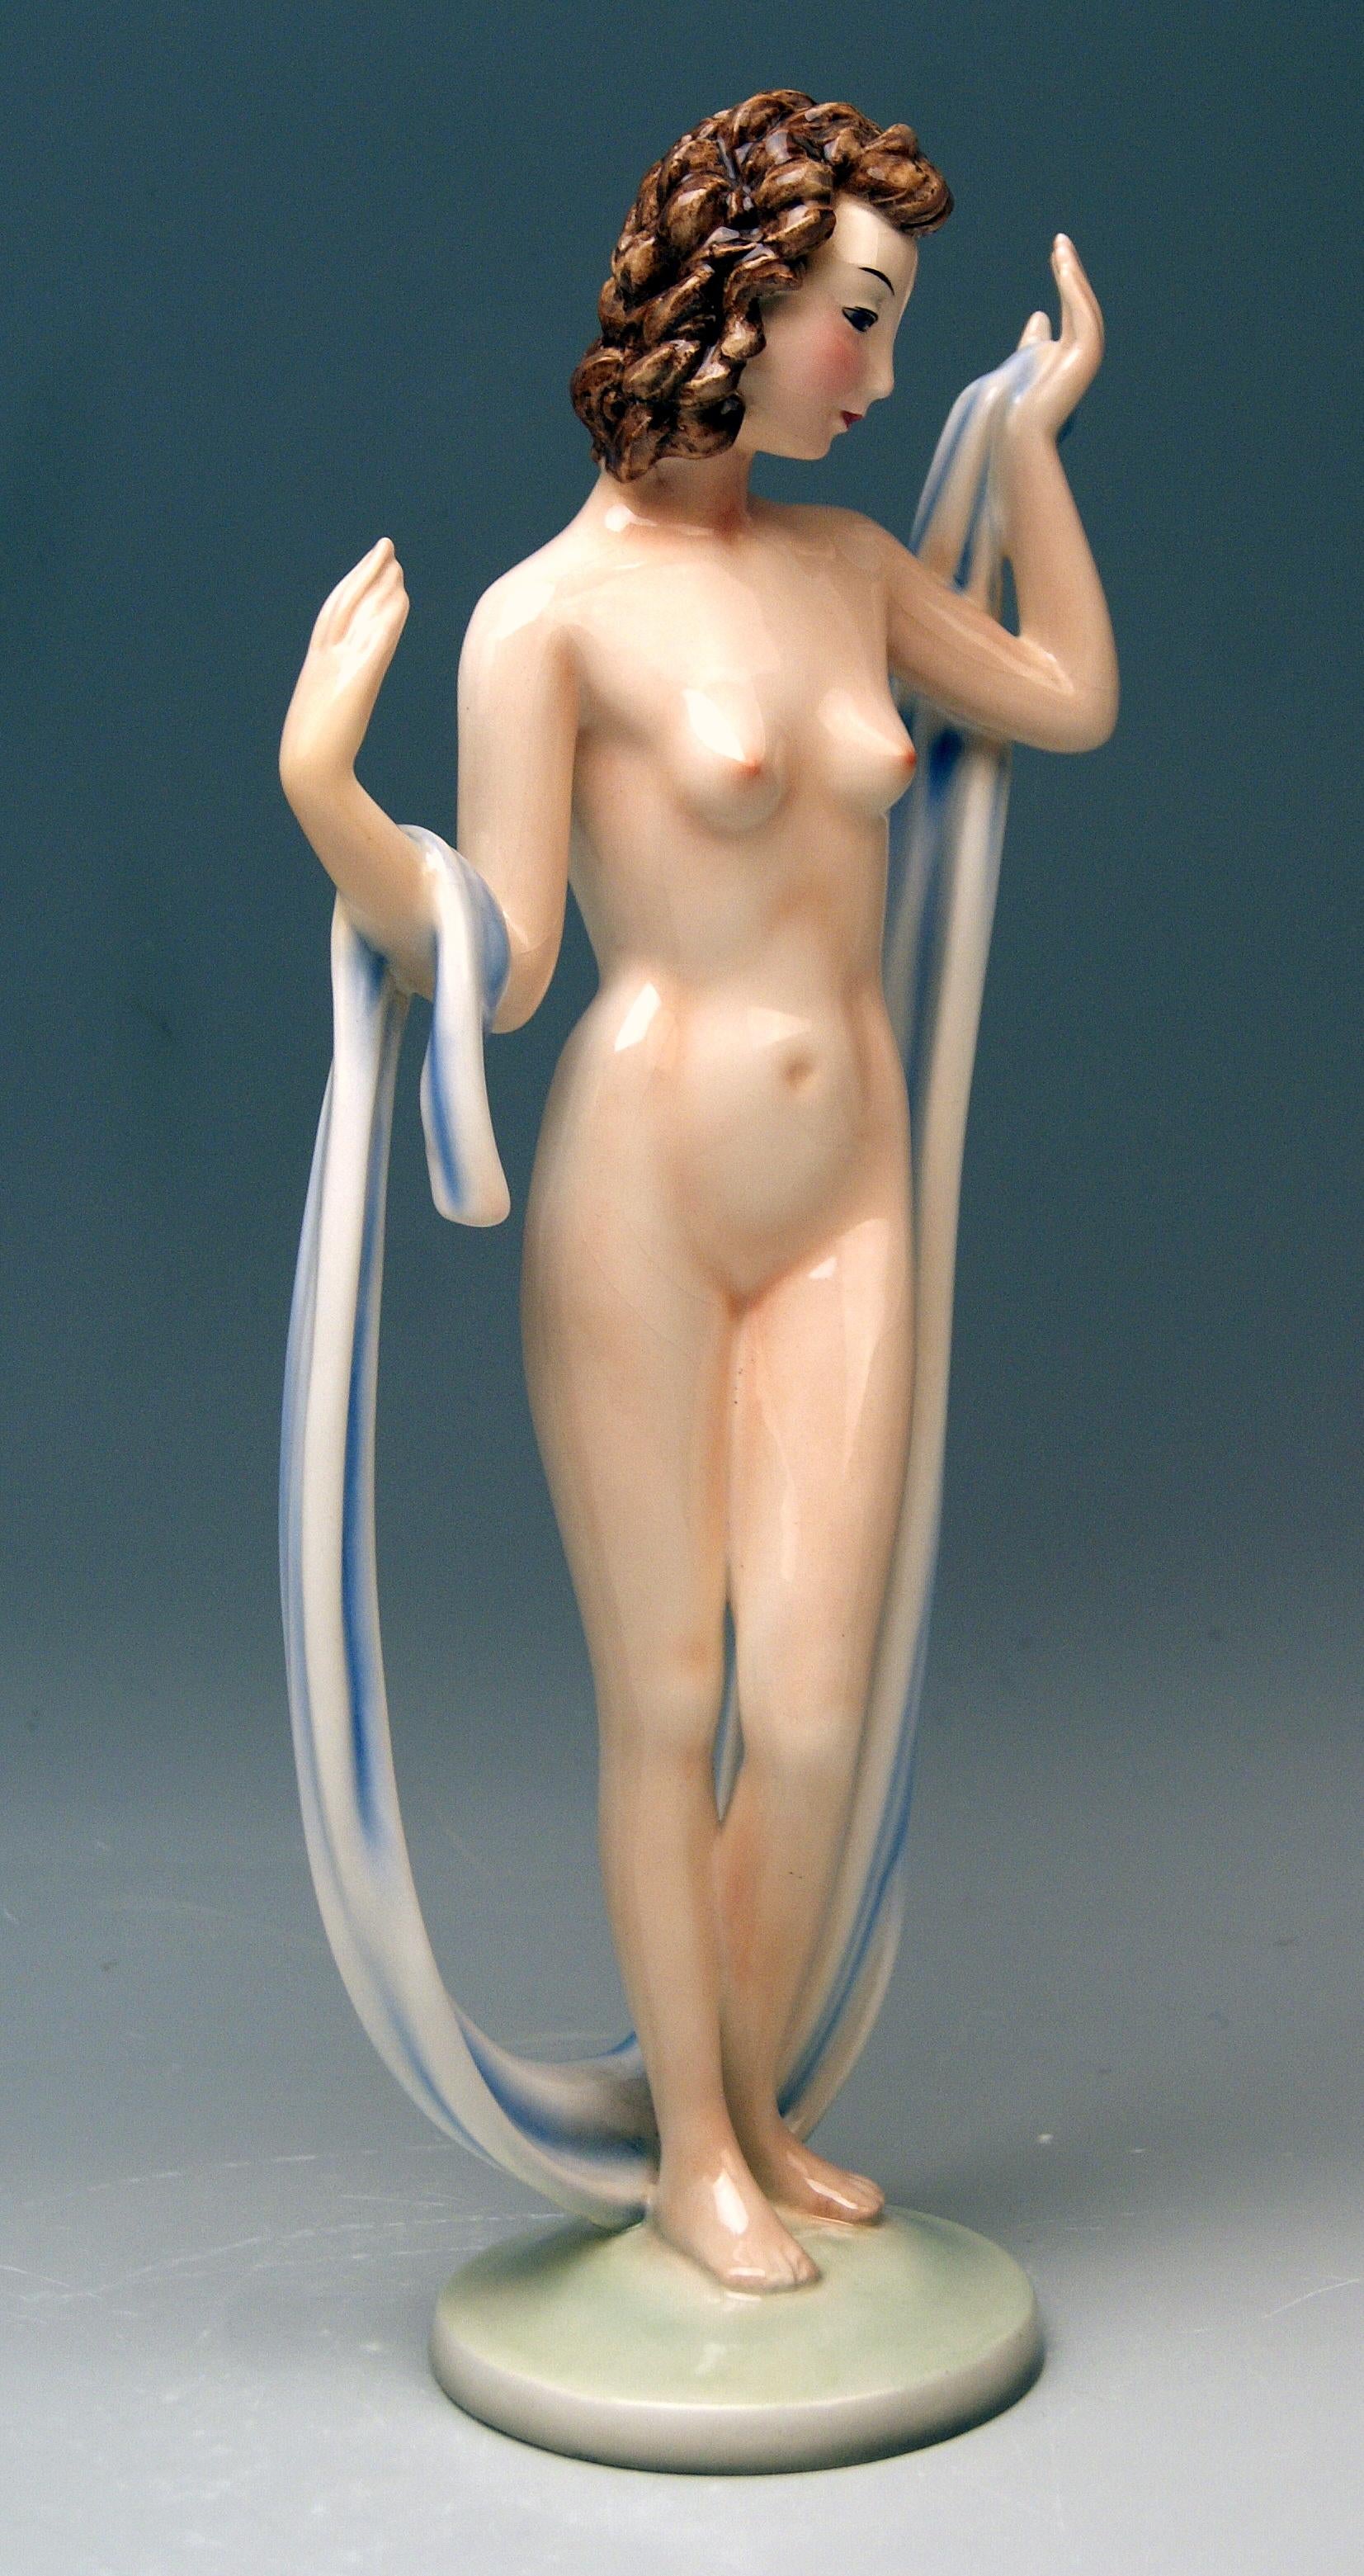 GOLDSCHEIDER WIEN SCHÖNE FIGURINE:   ART DECO FEMALE NUDE

Entworfen um das Jahr 1937 von Adolf Prischl (1912 - 1970). 
hergestellt um 1937.  
modellnummer 7975 / 3
zusätzlich sind auch die folgenden marken sichtbar:  
Goldscheider WIEN (= VIENNA)